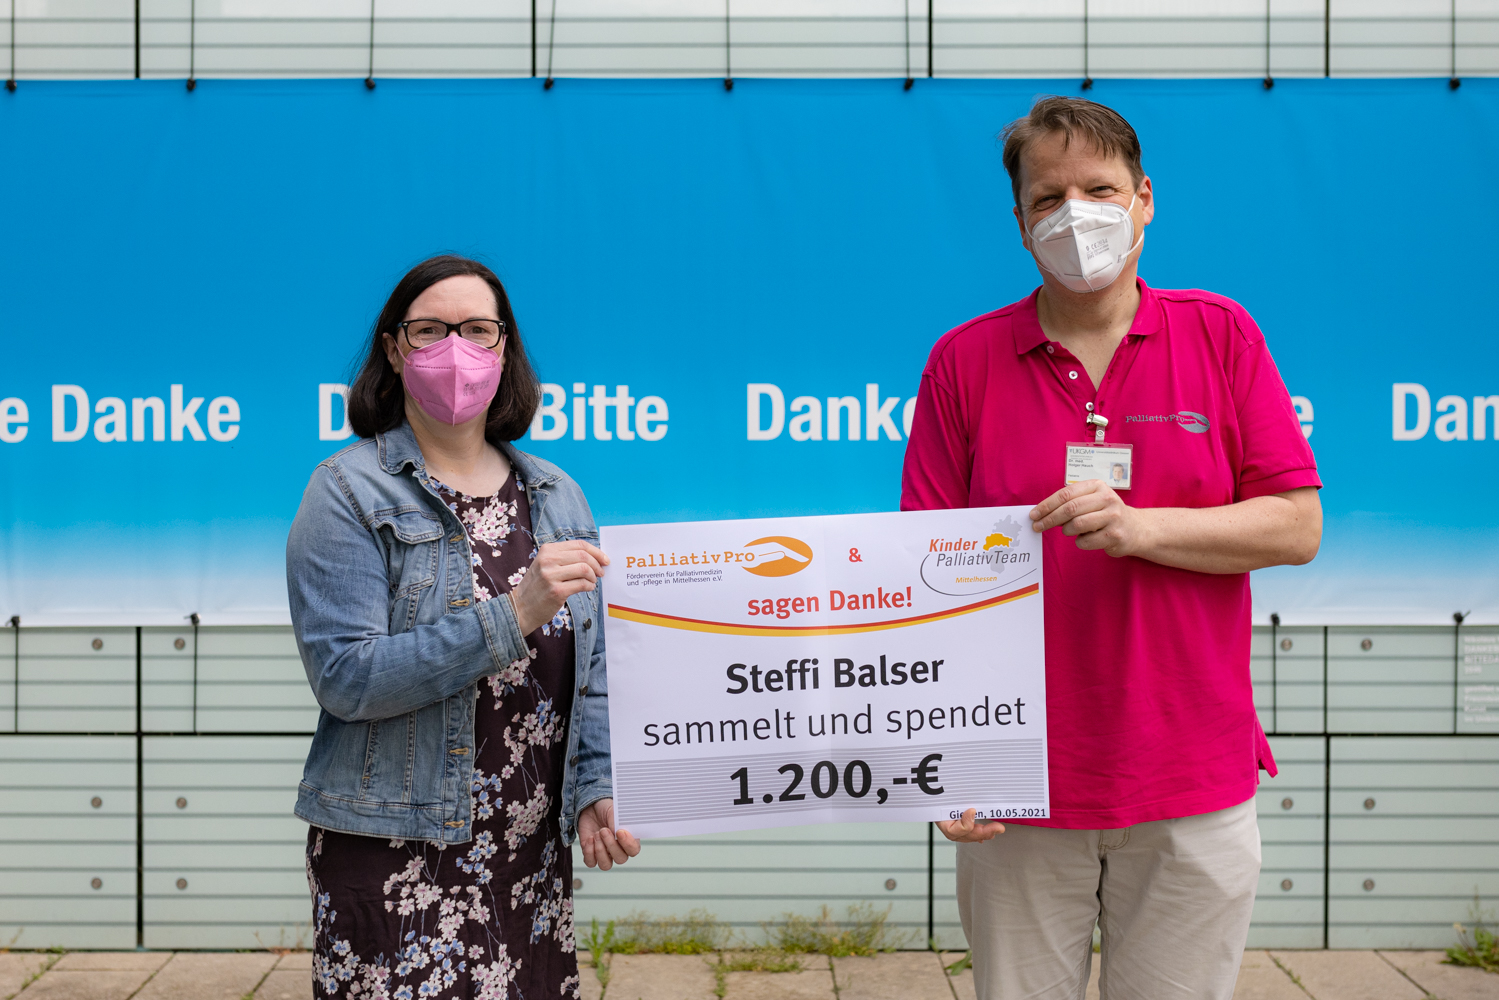 Steffi Balser Salon Claus Nidda spendet an PalliativPro